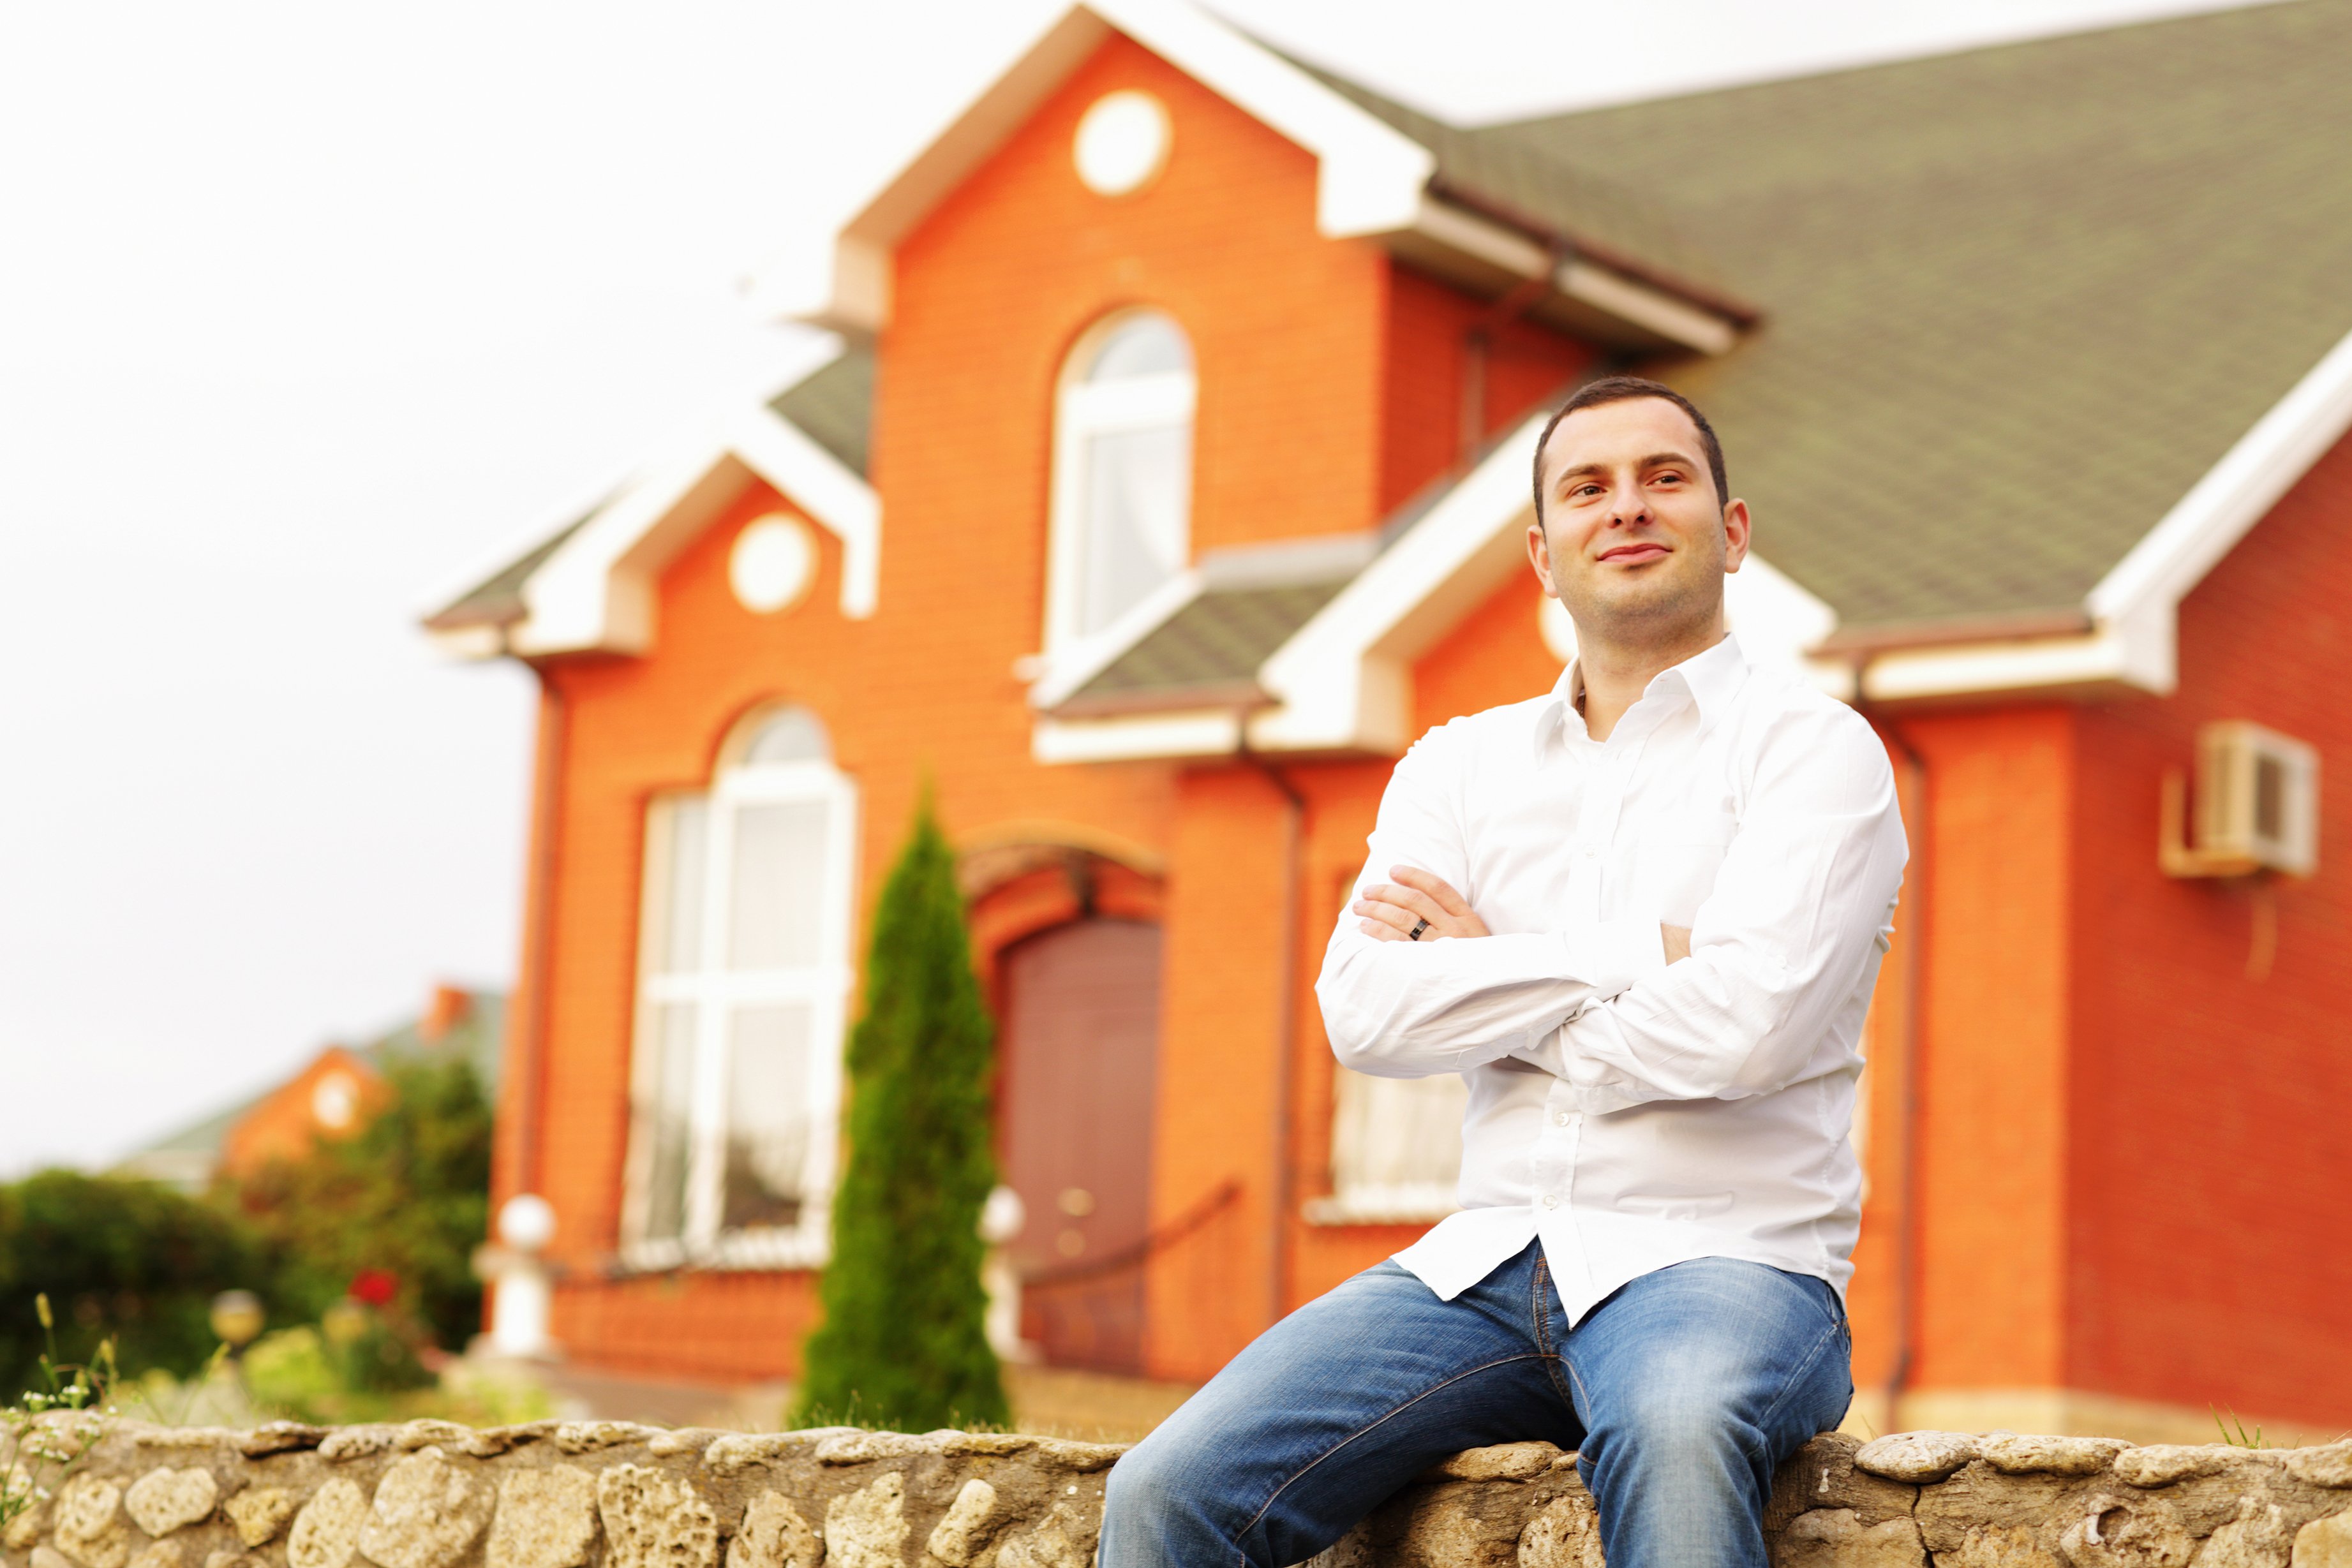 Hombre feliz sentado frente a una casa de ladrillos anaranjados. | Foto: Shutterstock